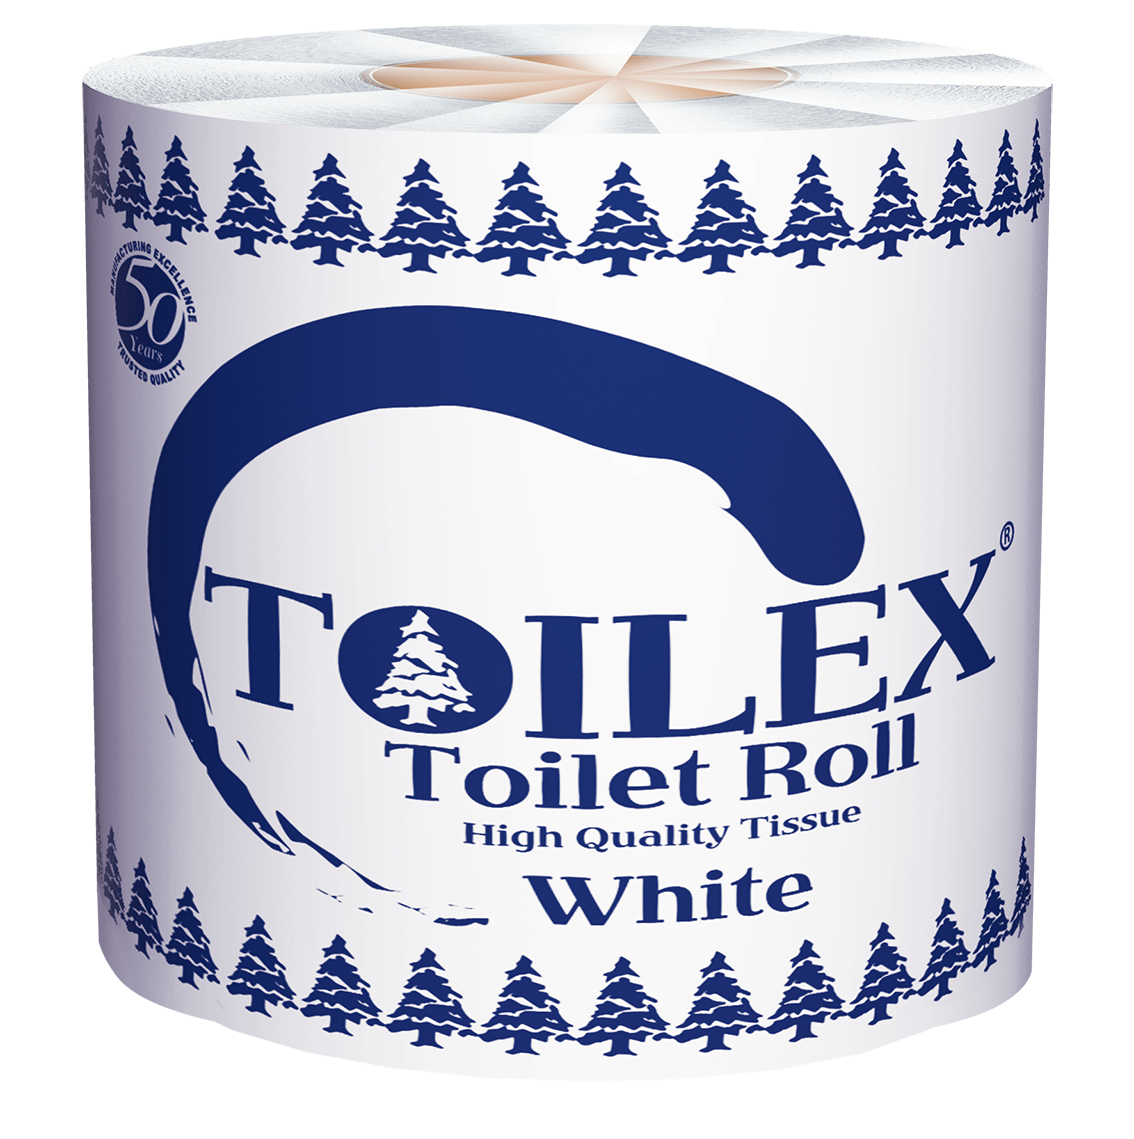 toilex-plastic-roll.png - 1014.24 kb